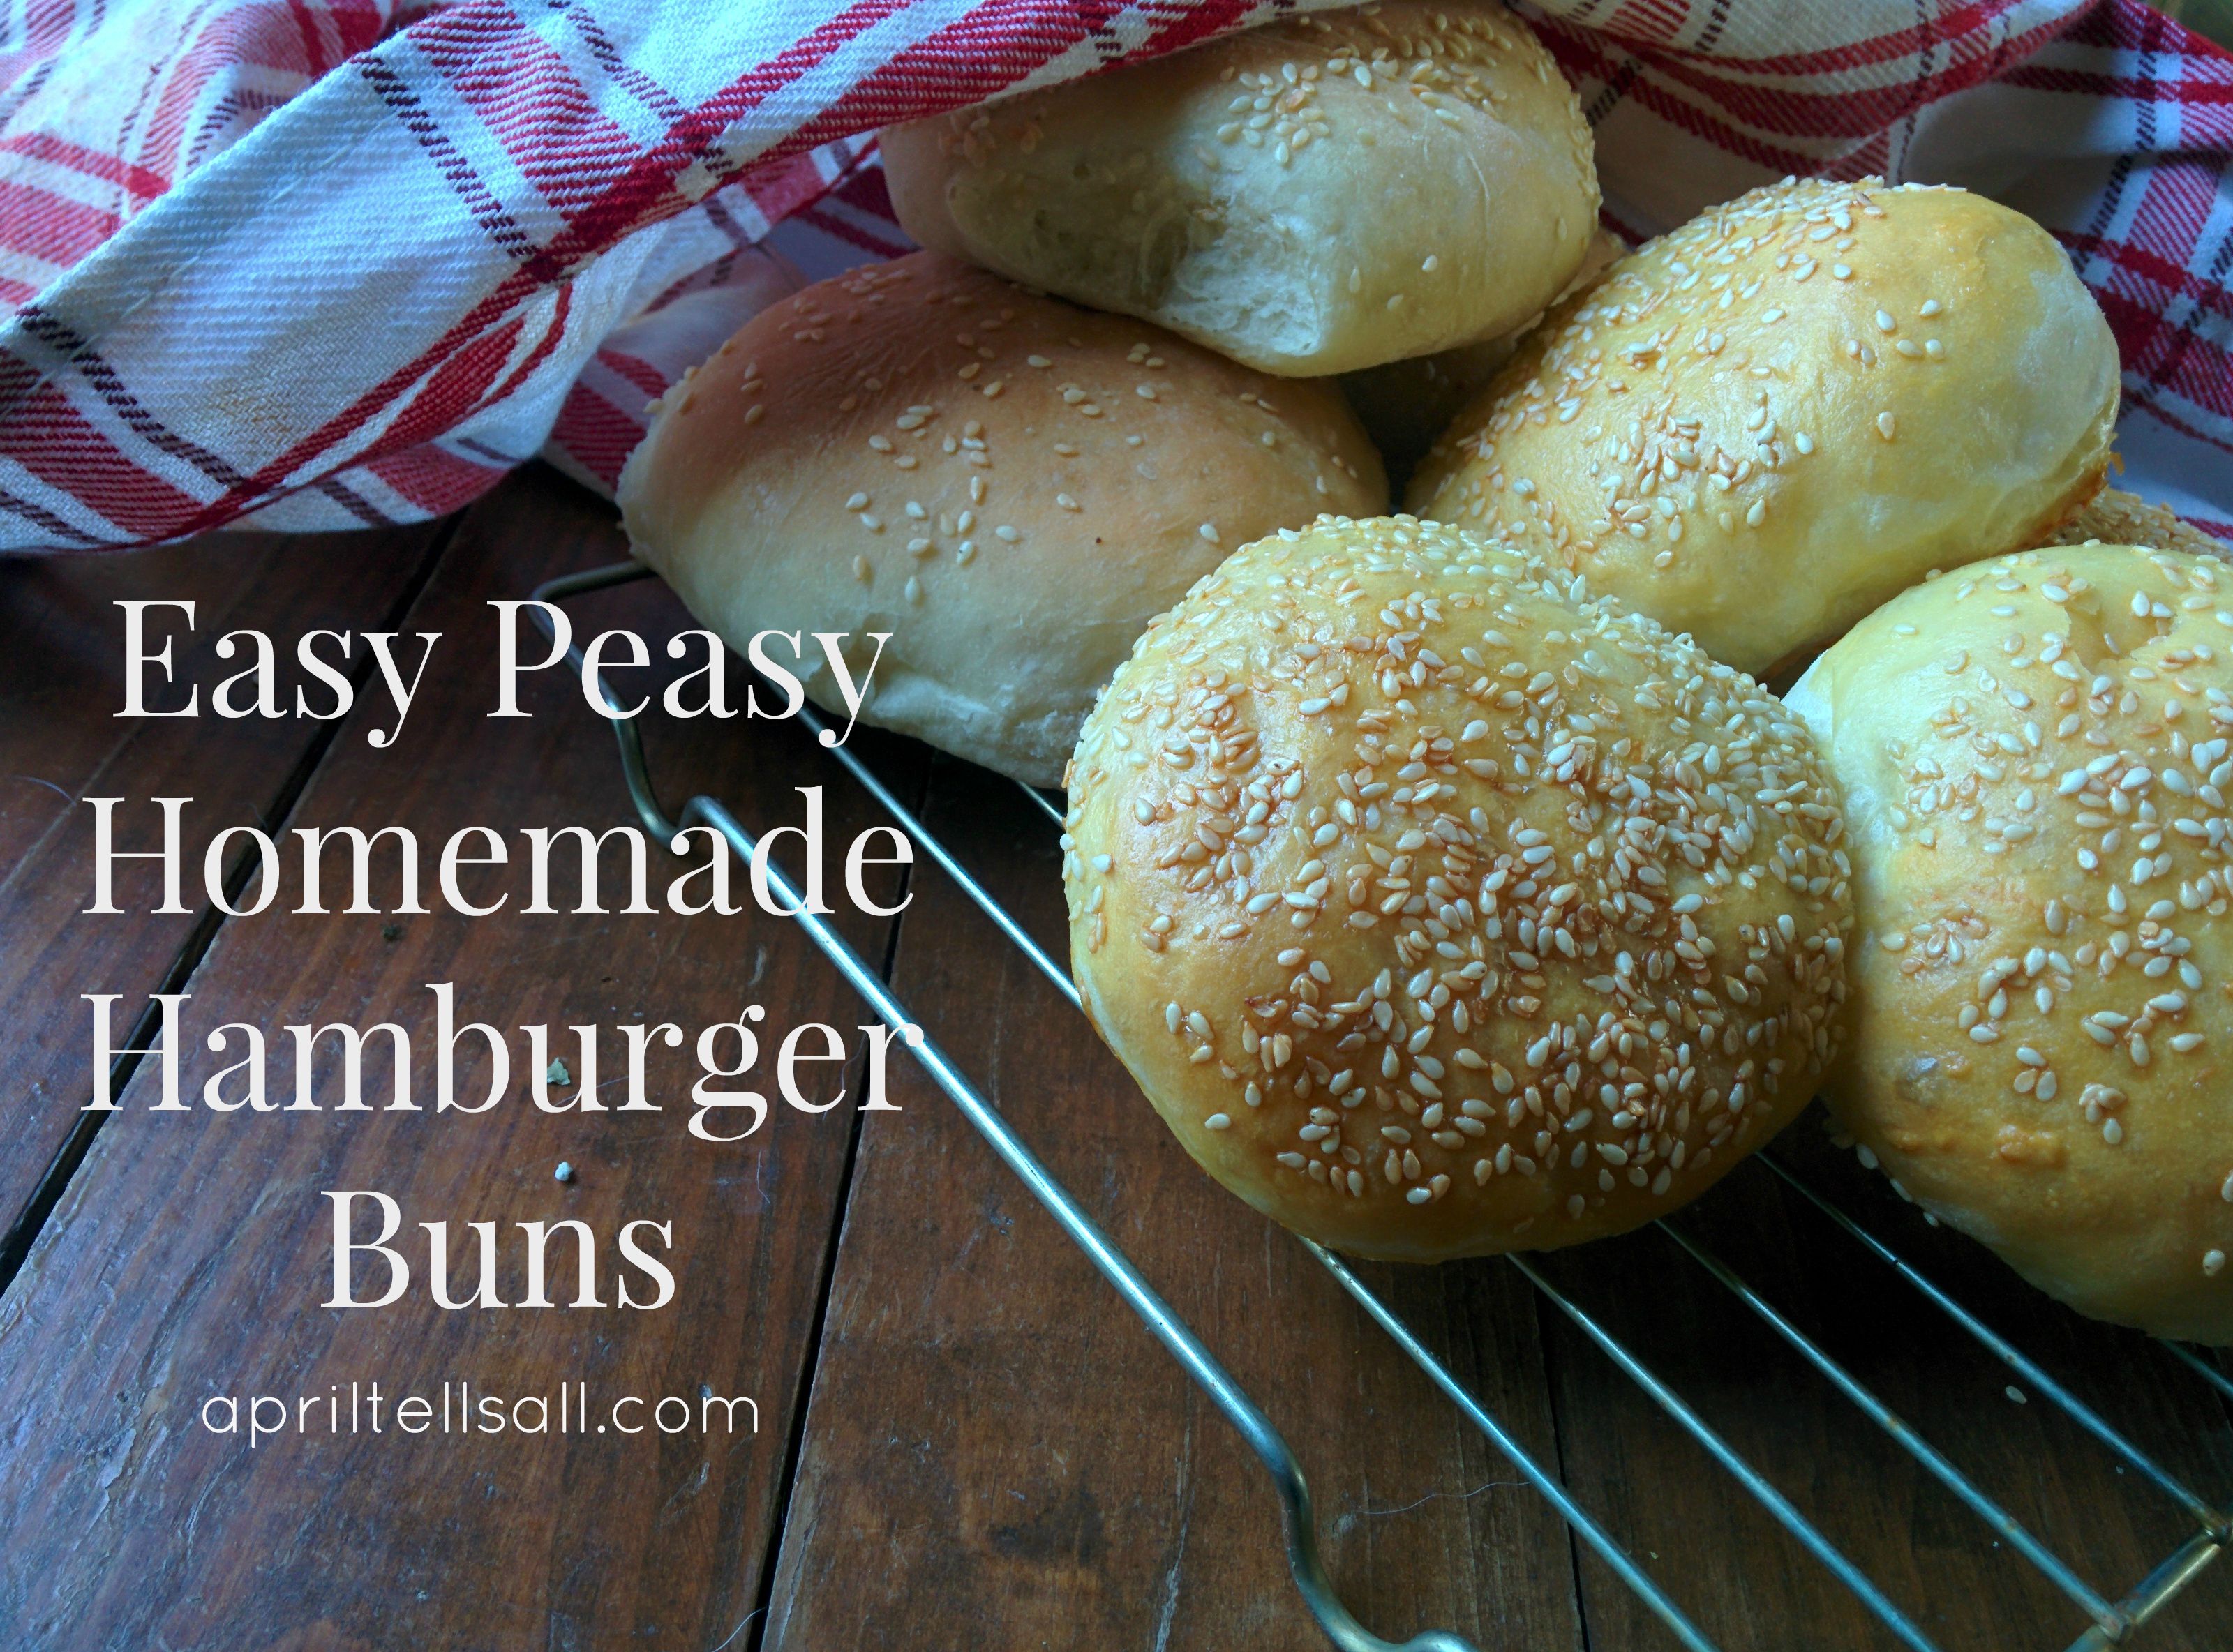 Easy Peasy Homemade Hamburger Buns